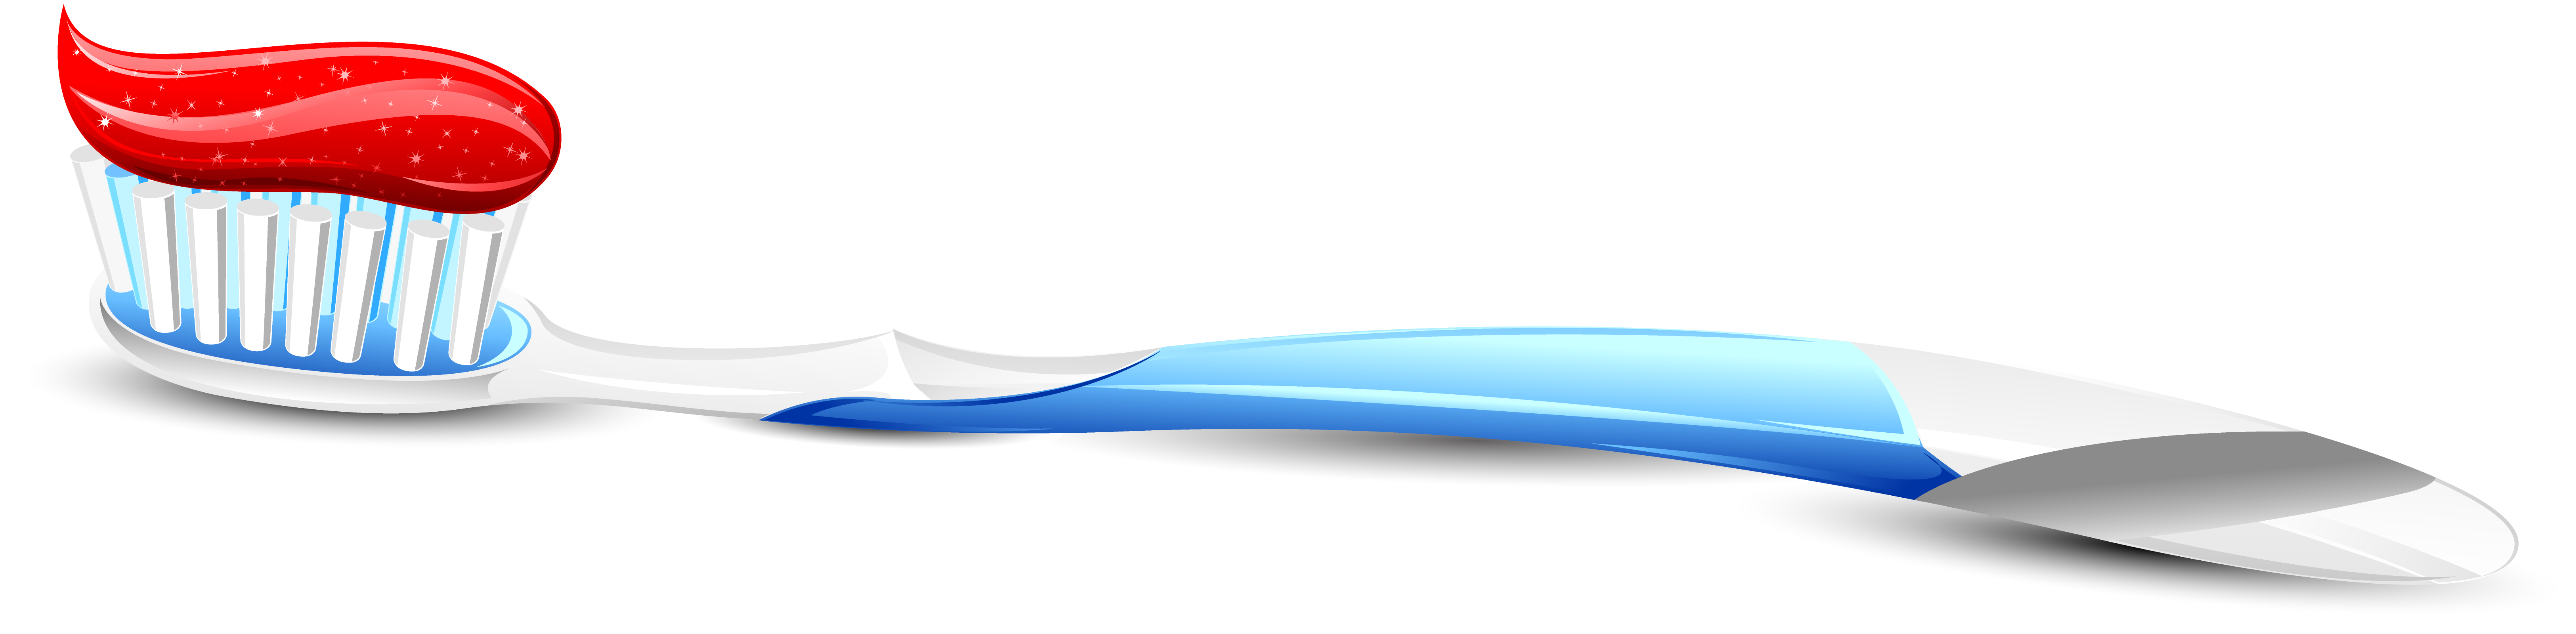 Brosse à dents PNG Télécharger limage